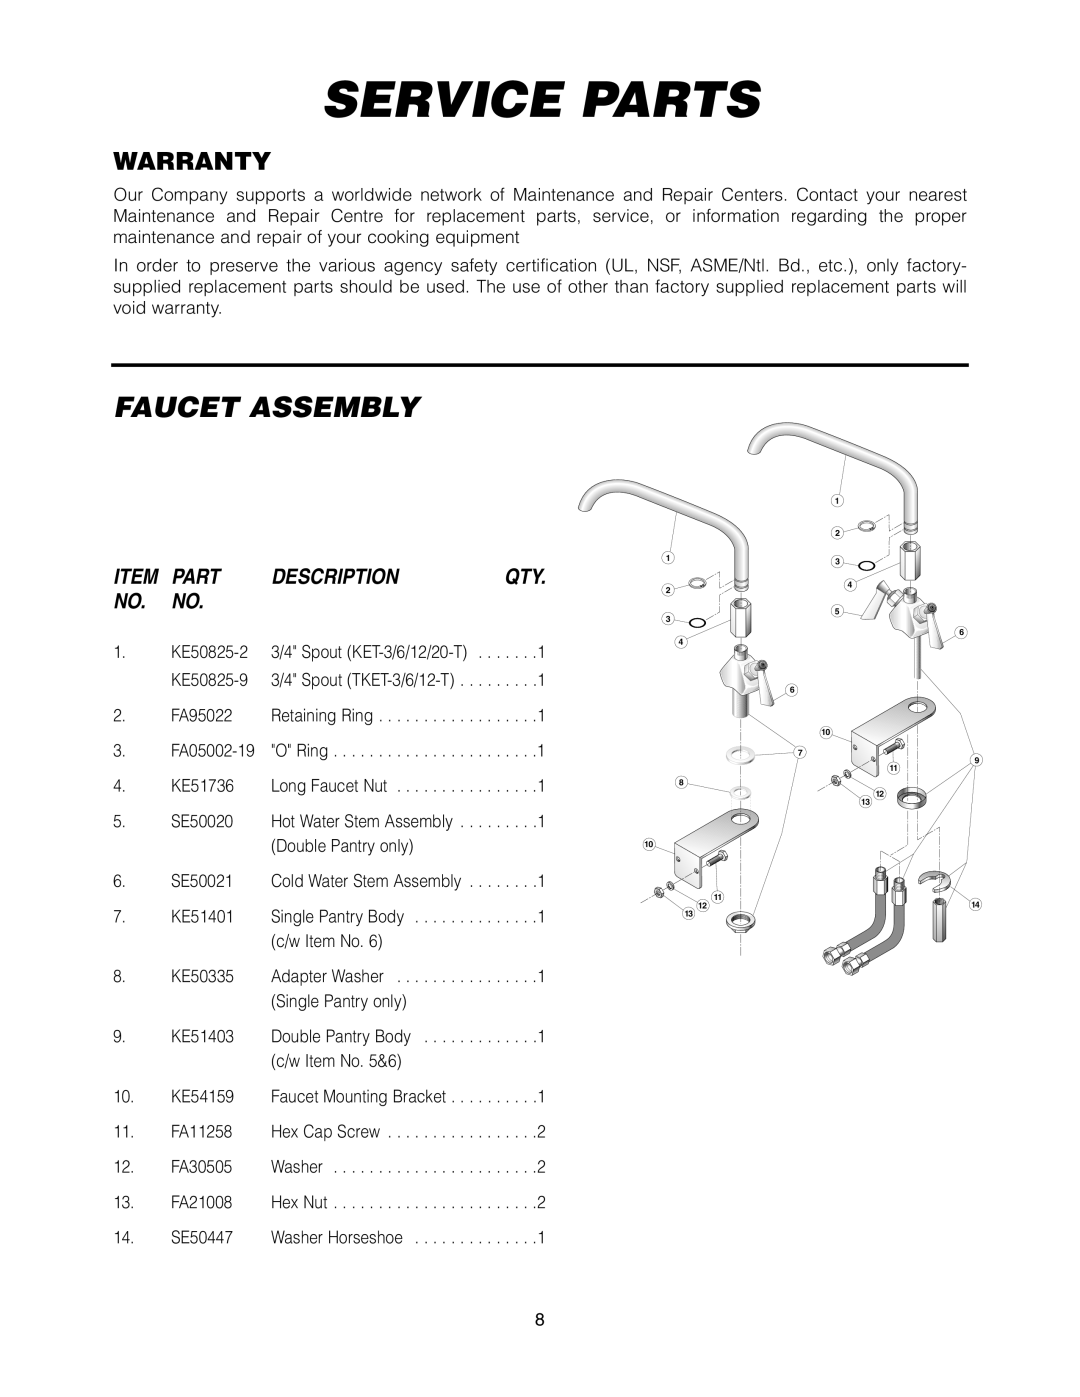 Cleveland Range KET-3-T manual Service Parts, Faucet Assembly, Warranty, Description 